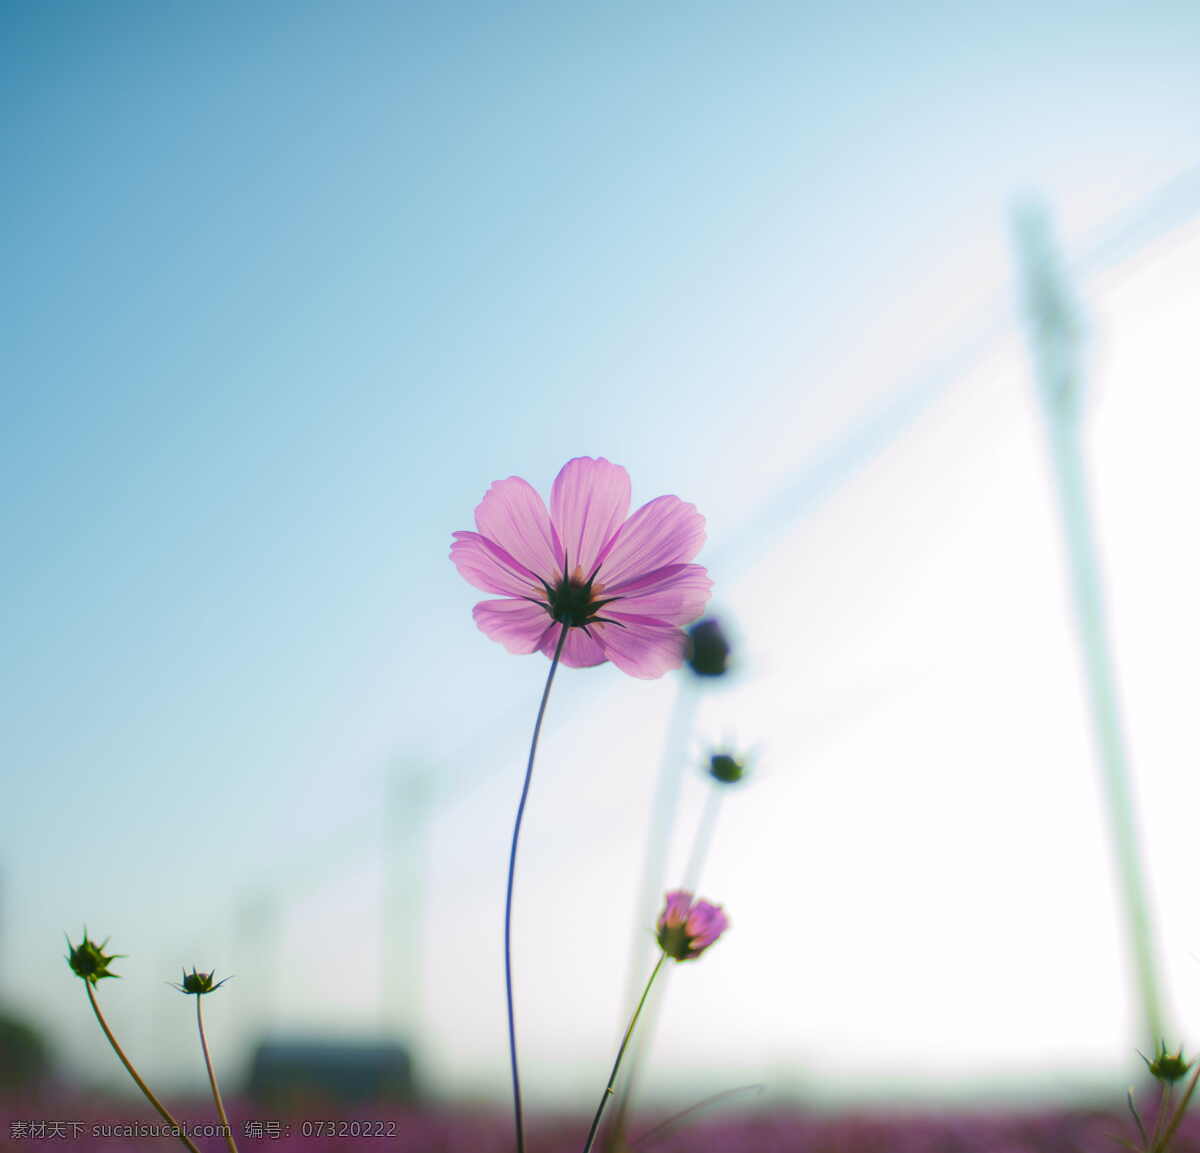 粉红色的花朵 开花植物 花 植物 花瓣 花卉 天空 cc0 公共领域 大图 生物世界 花草